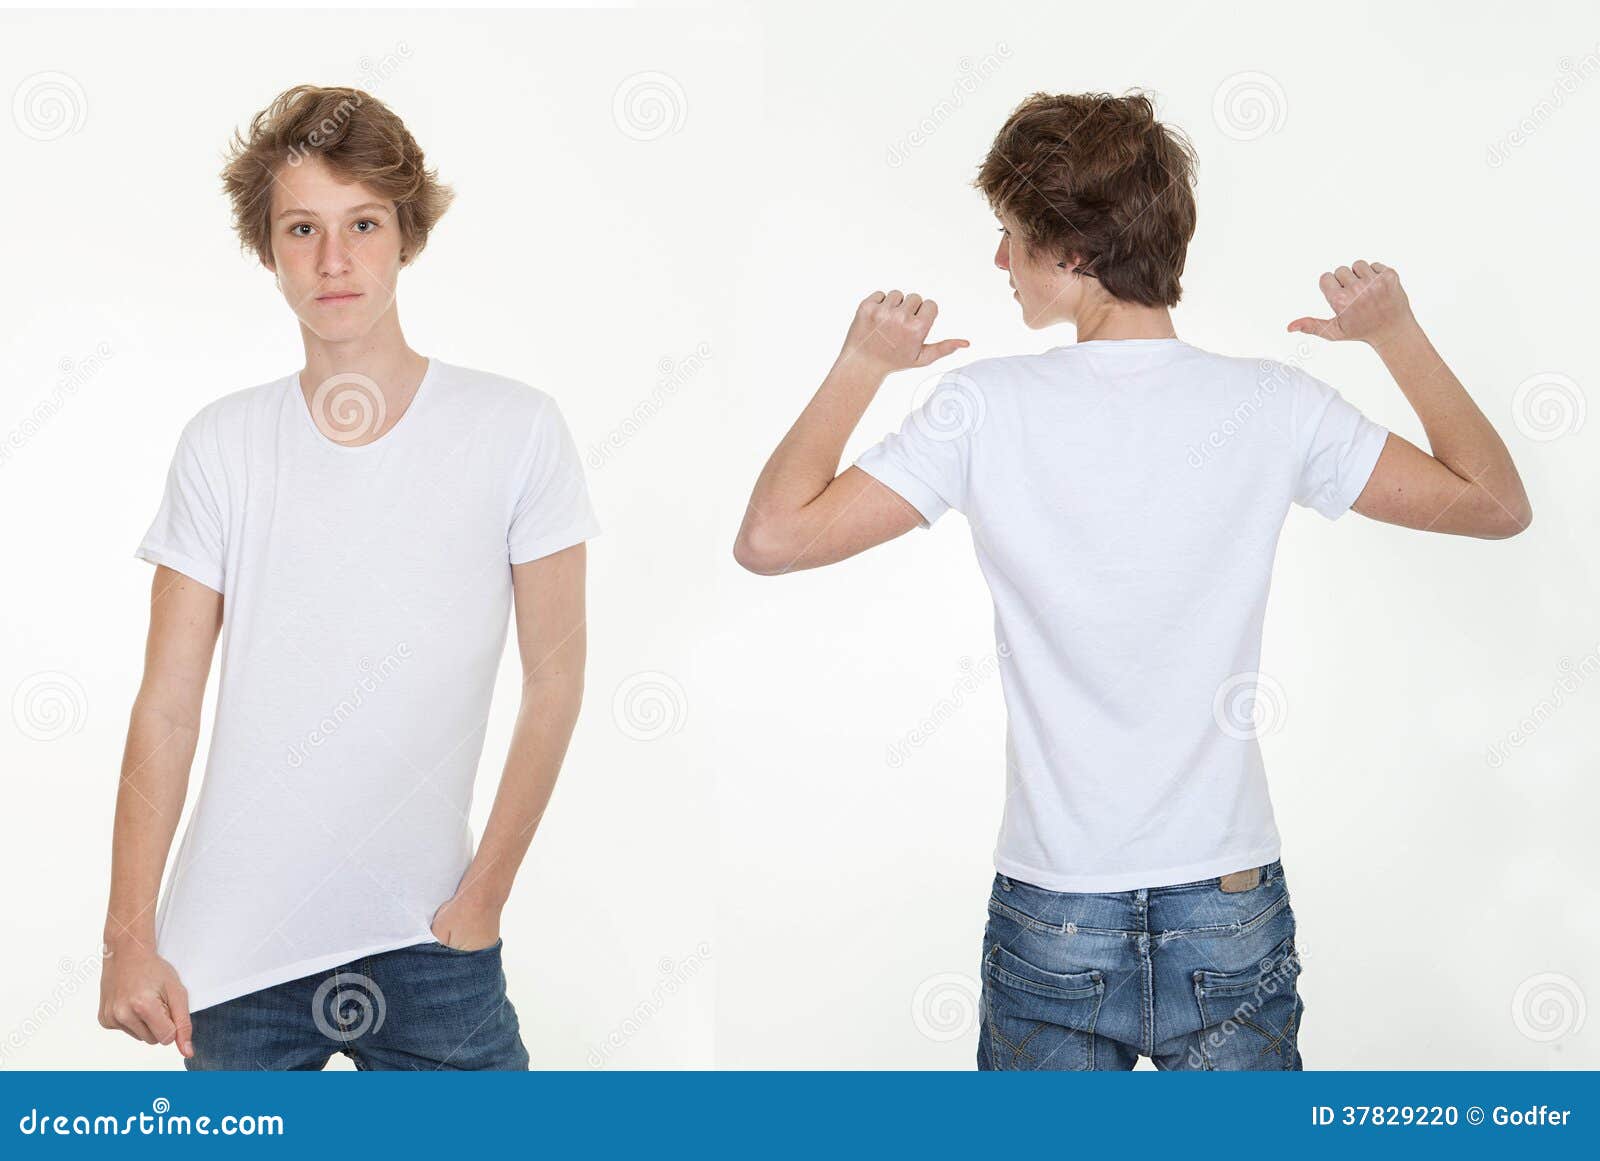 Что обозначает белая спина. Человек в белой футболке. Парень в белой футболке. Белая футболка. Белая футболка с двух сторон.